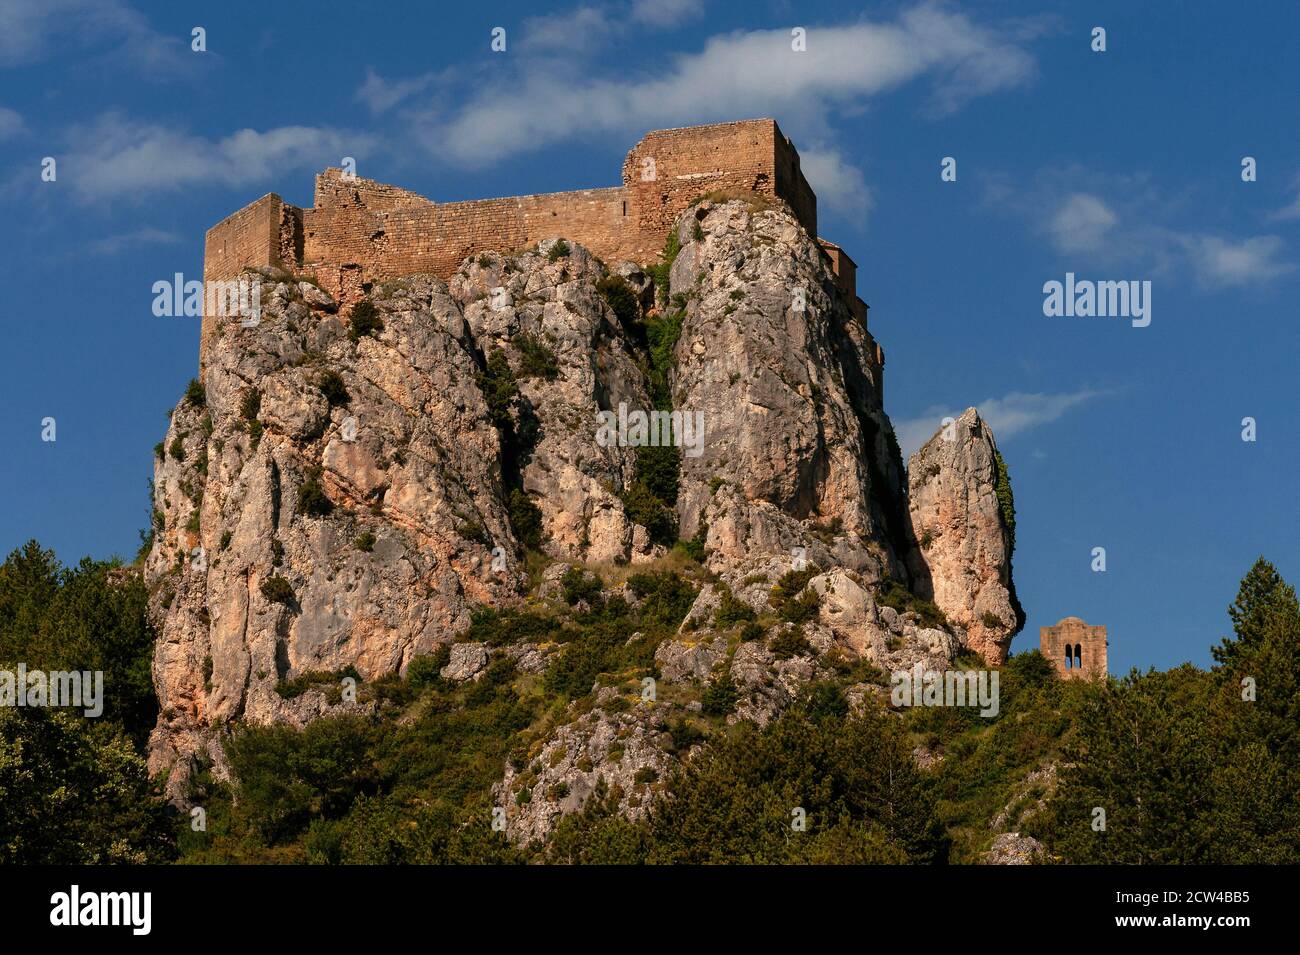 Le Castillo de Loarre médiéval, à Loarre, Huesca, Aragon, Espagne. Le château a été fondé en 1020 après J.-C. par le roi Sancho III de Navarre en tant que forteresse et résidence royale. C'est l'un des plus anciens châteaux d'Espagne. Son emplacement dans les contreforts des Pyrénées était un éperon rocheux presque impénétrables à environ 1 070 m (3 510 pi) au-dessus du niveau de la mer, commandant une grande zone de la frontière entre les territoires chrétiens et musulmans. Il a été agrandi à partir de 1073 par le roi Sancho Ramirez d'Aragon, qui l'a utilisé comme base pour sa conquête réussie de Huesca. Banque D'Images